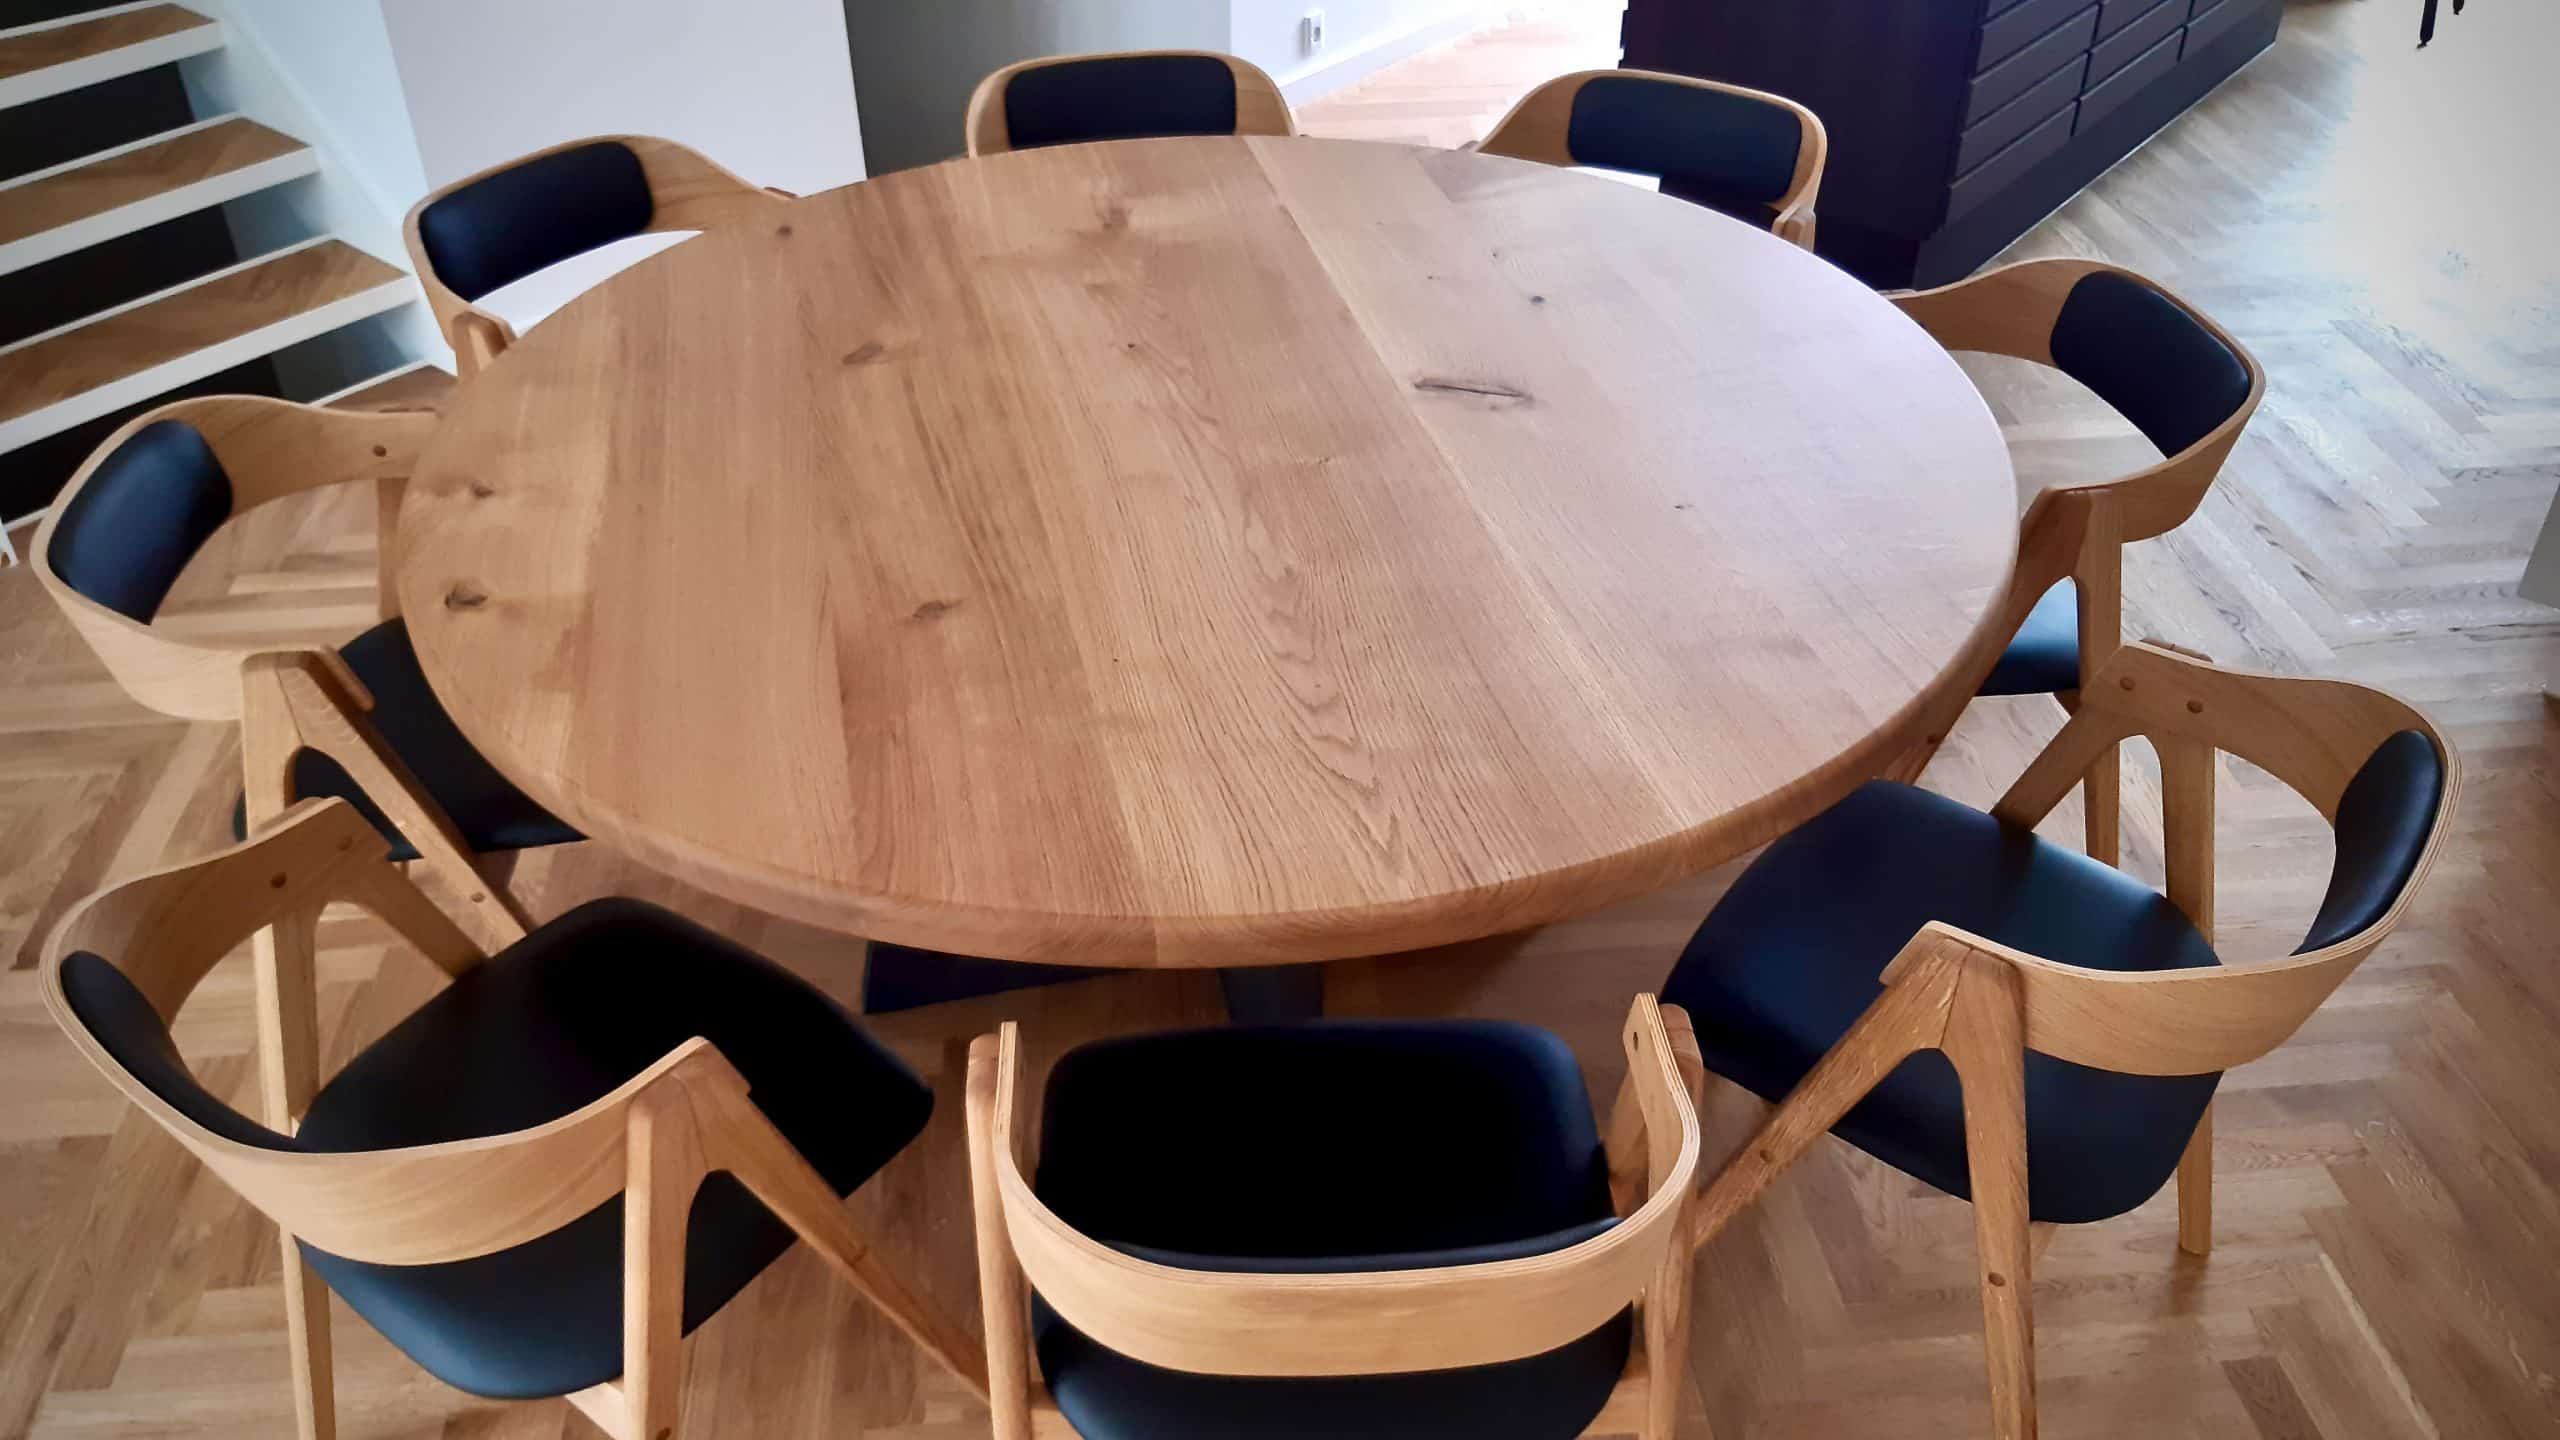 runder Tisch ovaler Tisch in trae traebord traemobler Kærbygård kaerbygård August 2020 13 skaliert